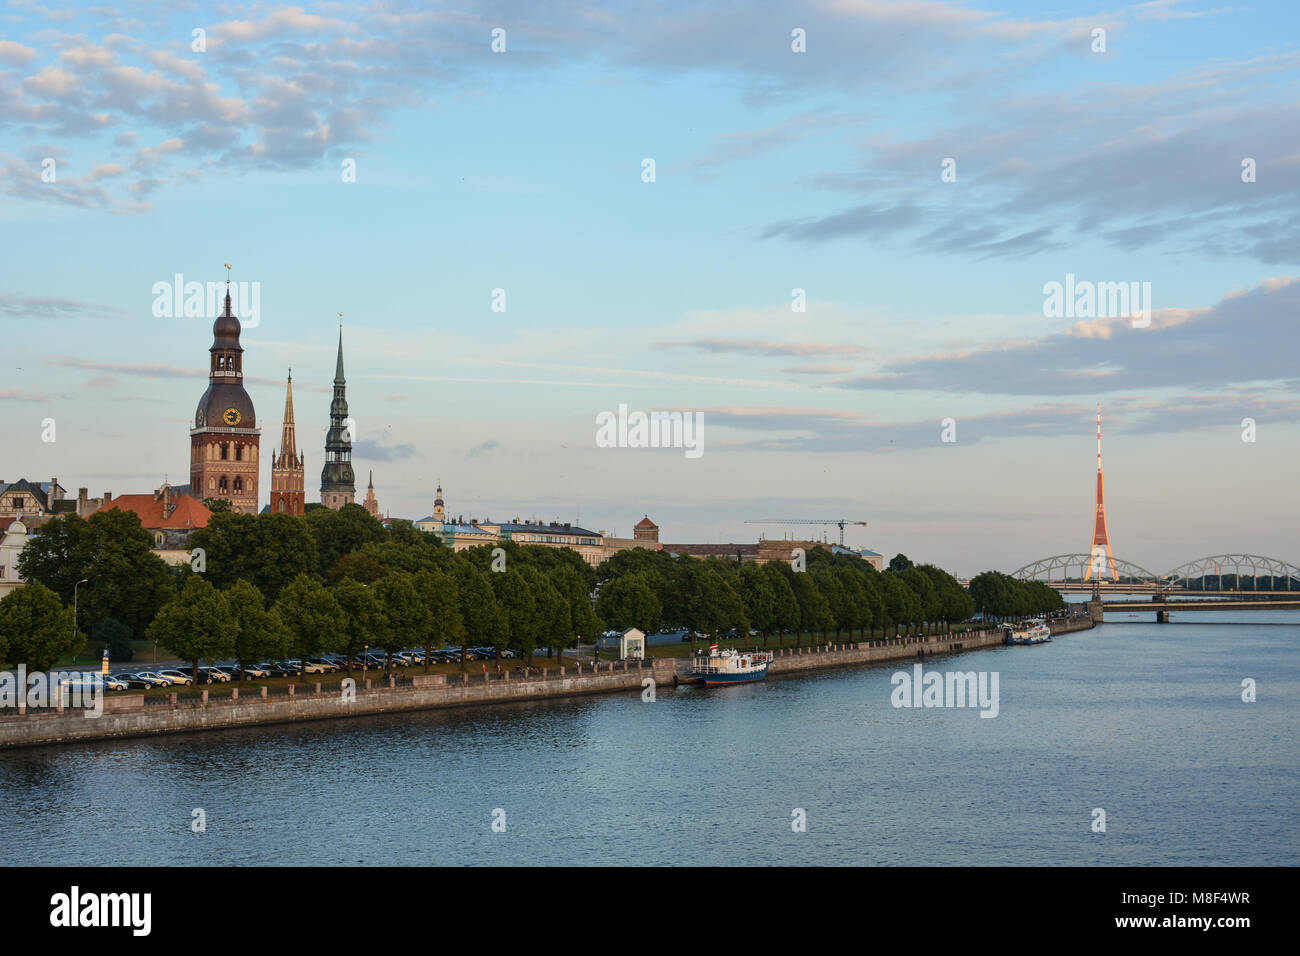 Riga, Lettland - 31. Juli 2017: Das stadtbild der Altstadt von Riga und Daugava (westlichen Dwina) River, Lettland. Mittelalterliche Architektur, gotische Stil Stockfoto